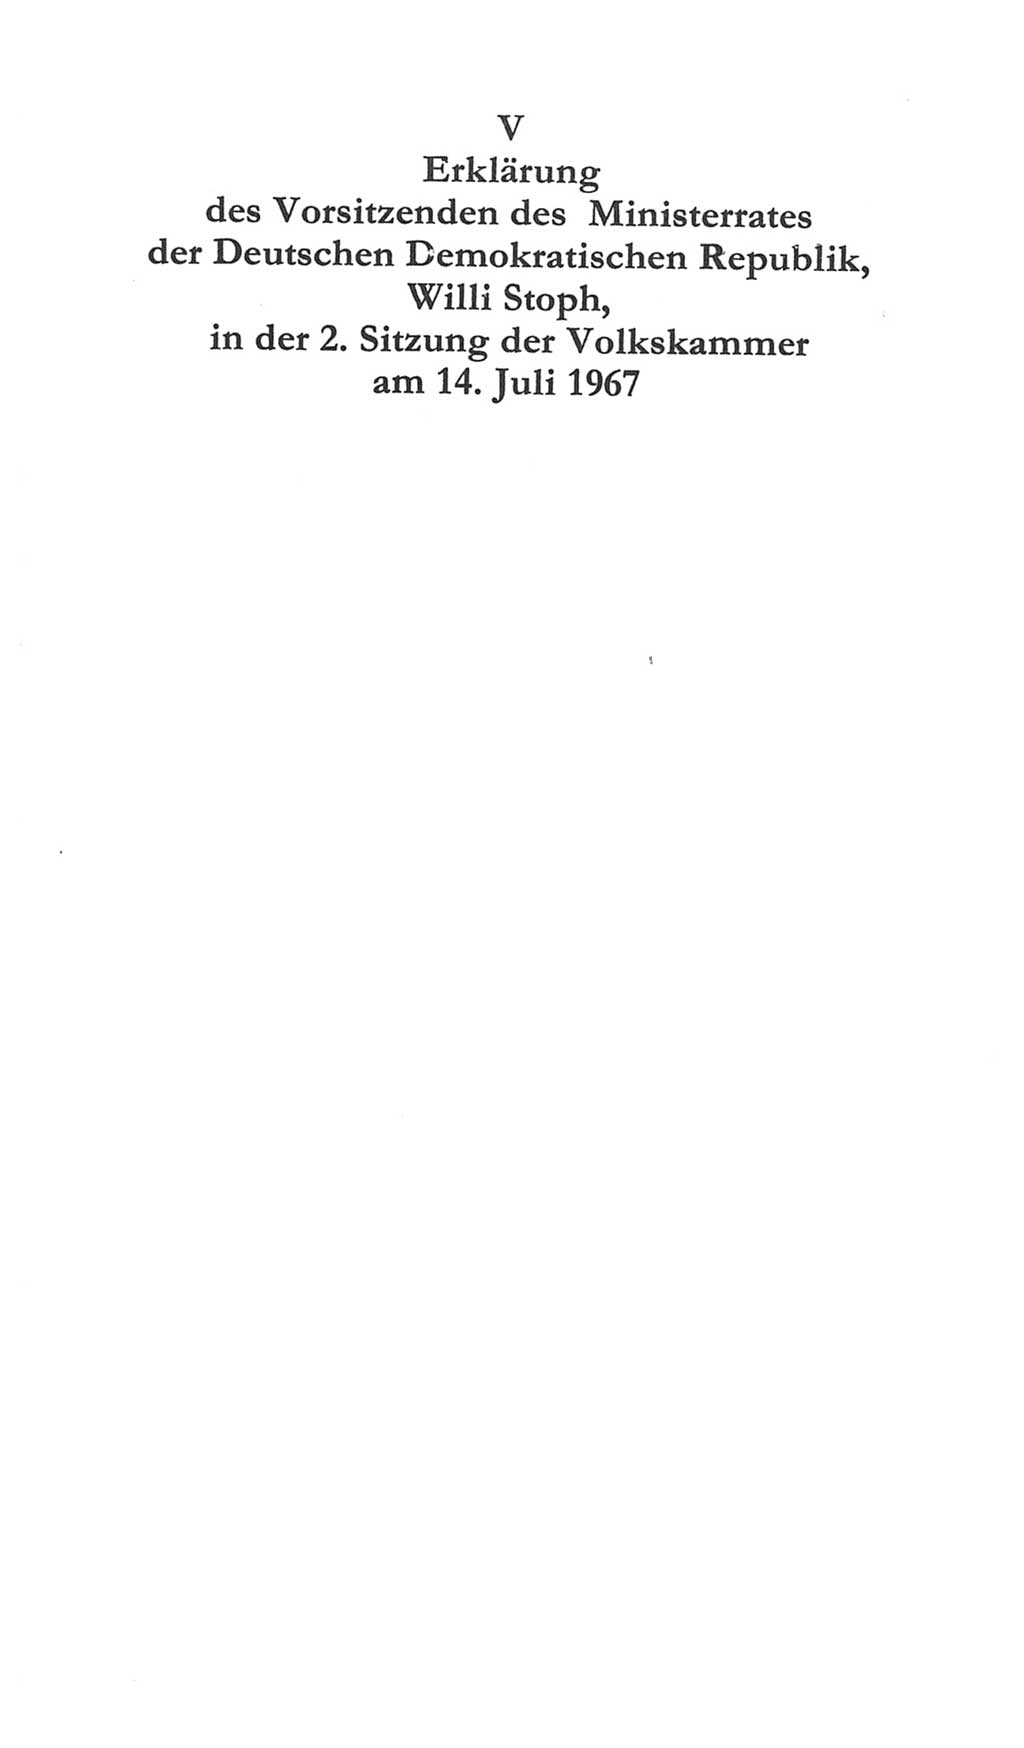 Volkskammer (VK) der Deutschen Demokratischen Republik (DDR) 5. Wahlperiode 1967-1971, Seite 777 (VK. DDR 5. WP. 1967-1971, S. 777)